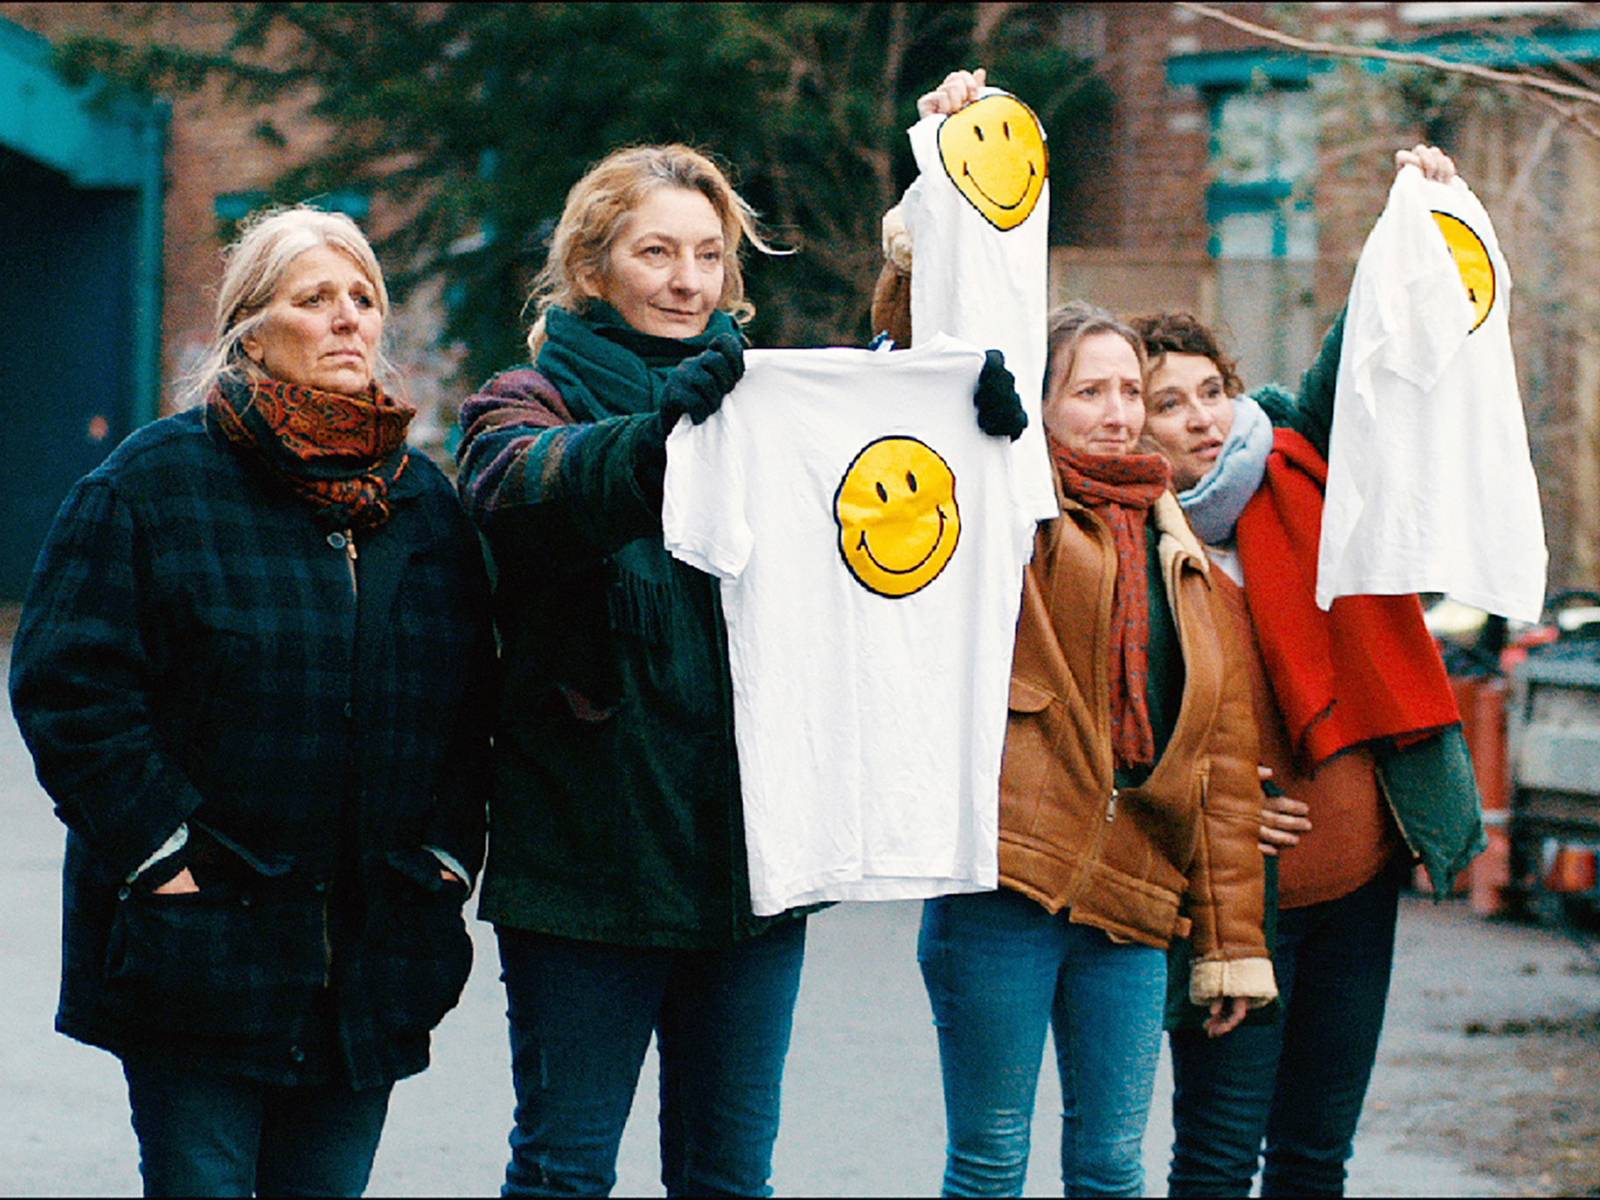 Auf dem Foto zu sehen sind vier Frauen in warmen Jacken. Drei von ihnen halten T-Shirts in die Höhe, auf denen ein lächelnder Smiley zu sehen ist.